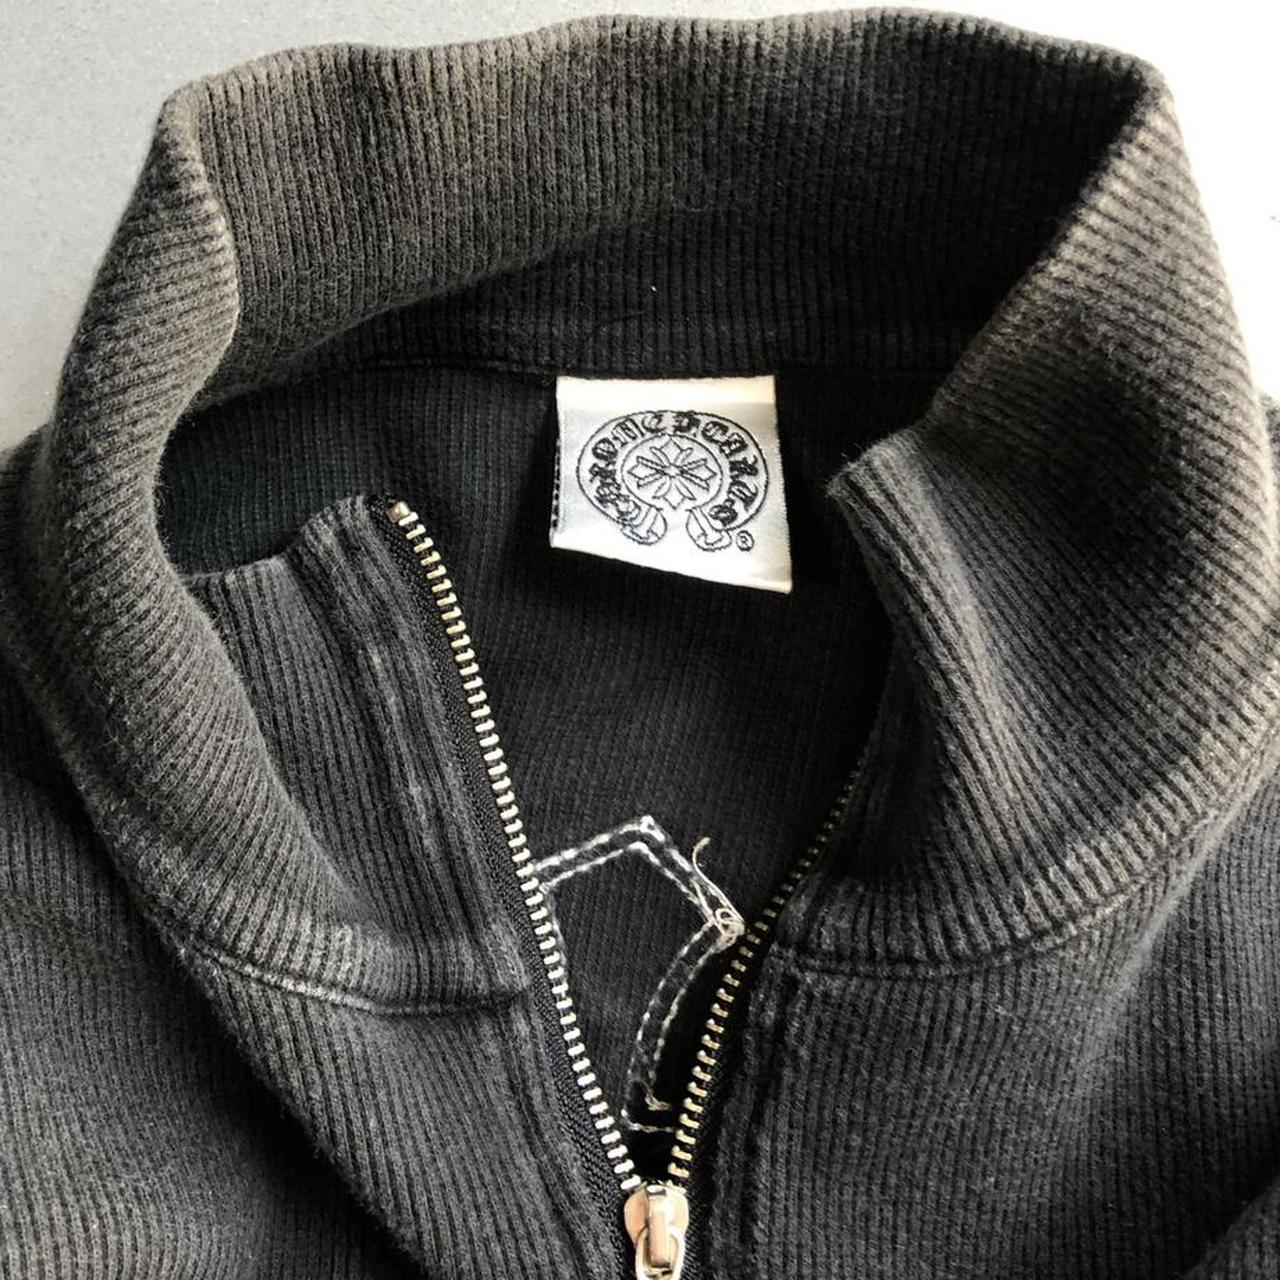 Vintage Chrome Hearts quarter zip (100% cotton)... - Depop